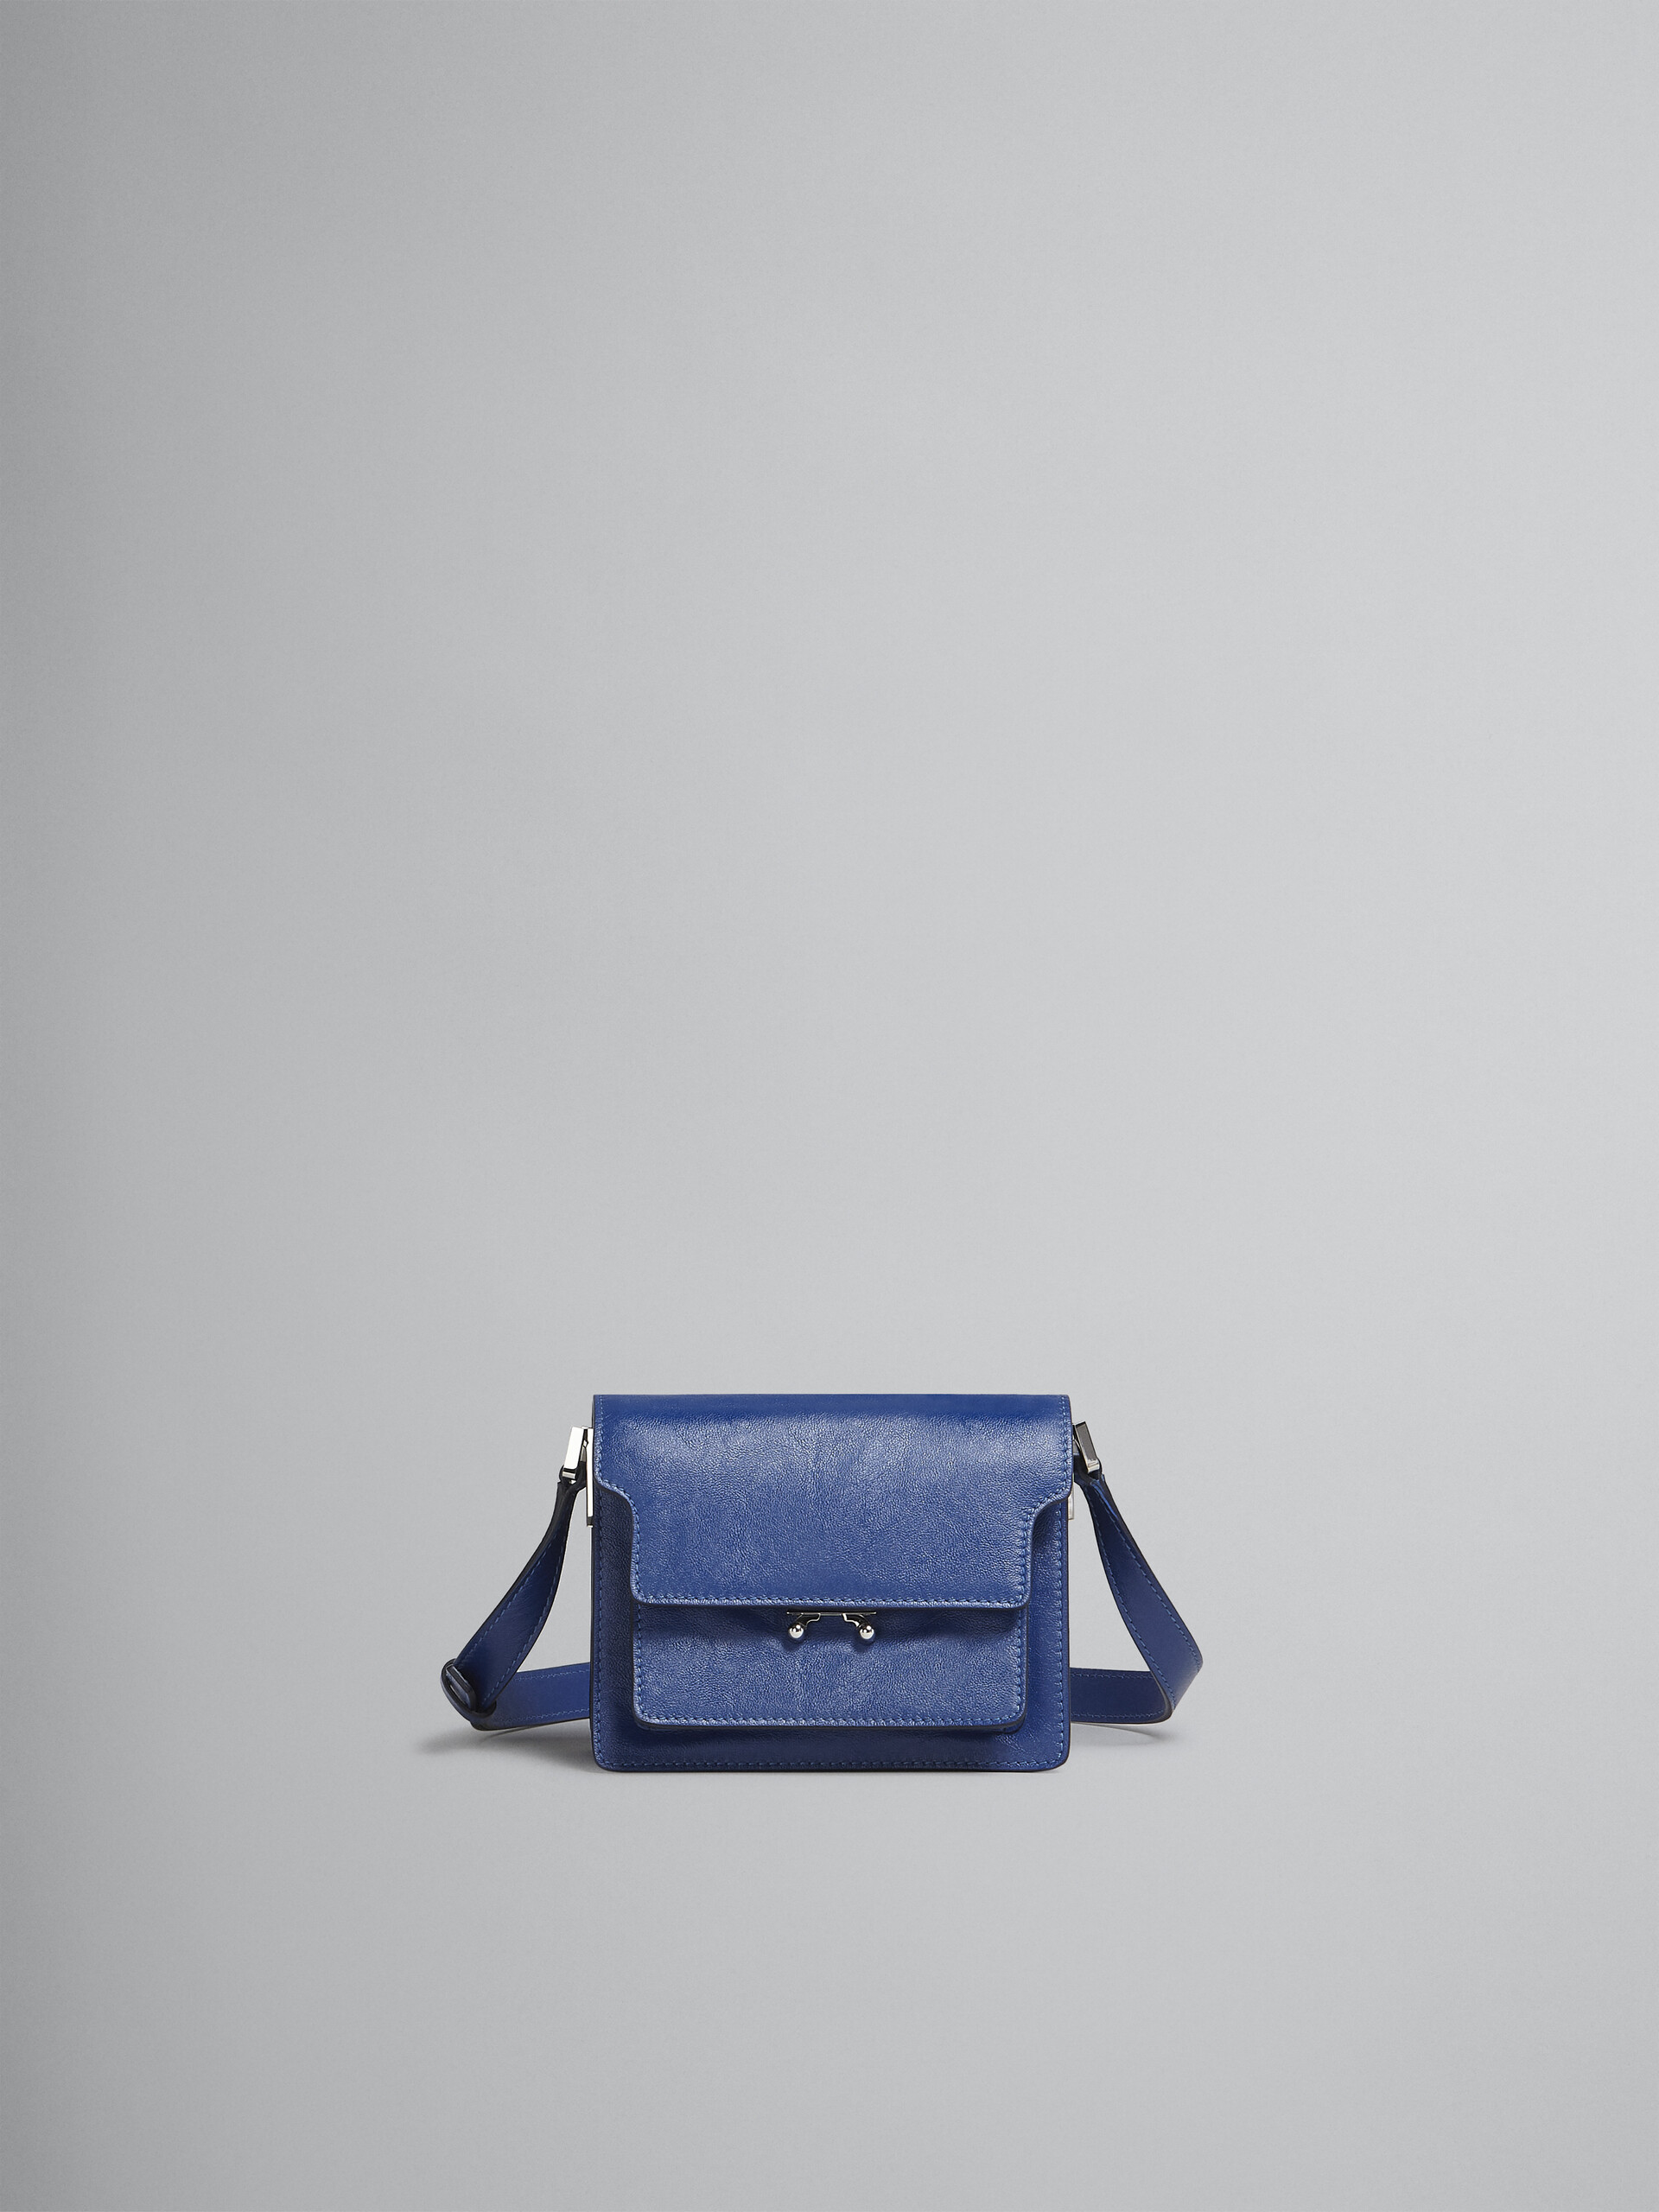 Trunk Soft Mini Bag in blue leather - Shoulder Bag - Image 1